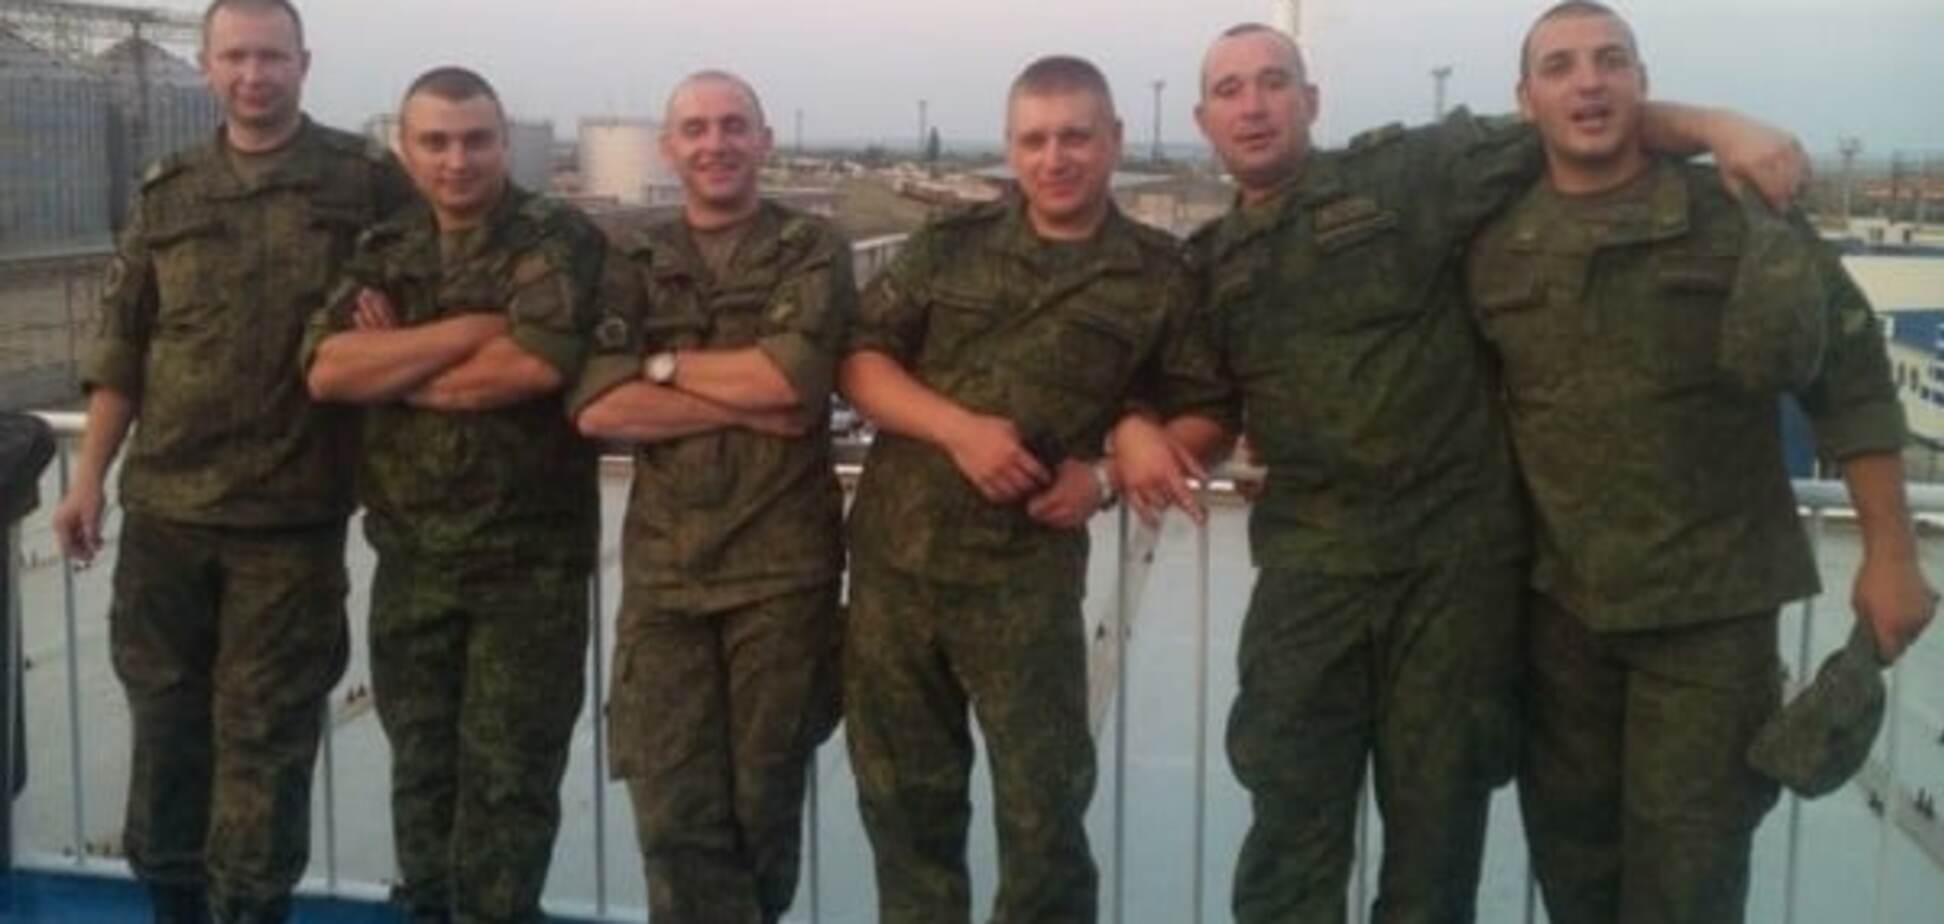 Вычислено российское подразделение, воевавшее на Донбассе и в Сирии